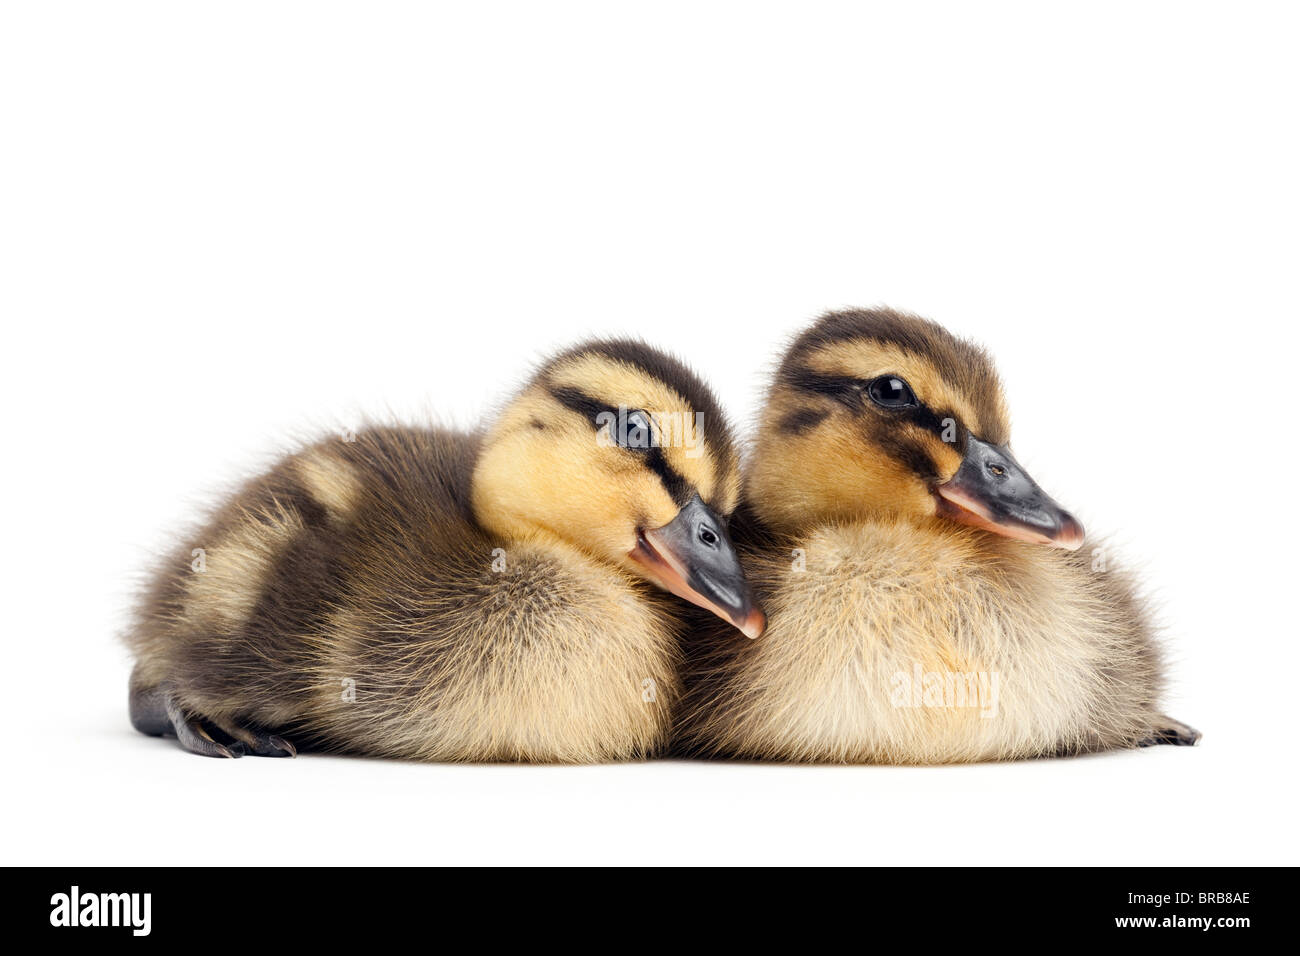 Dos Lindos bebes patos aislado en blanco - hembra closeup patos reales (Anas platyrhynchos) Foto de stock